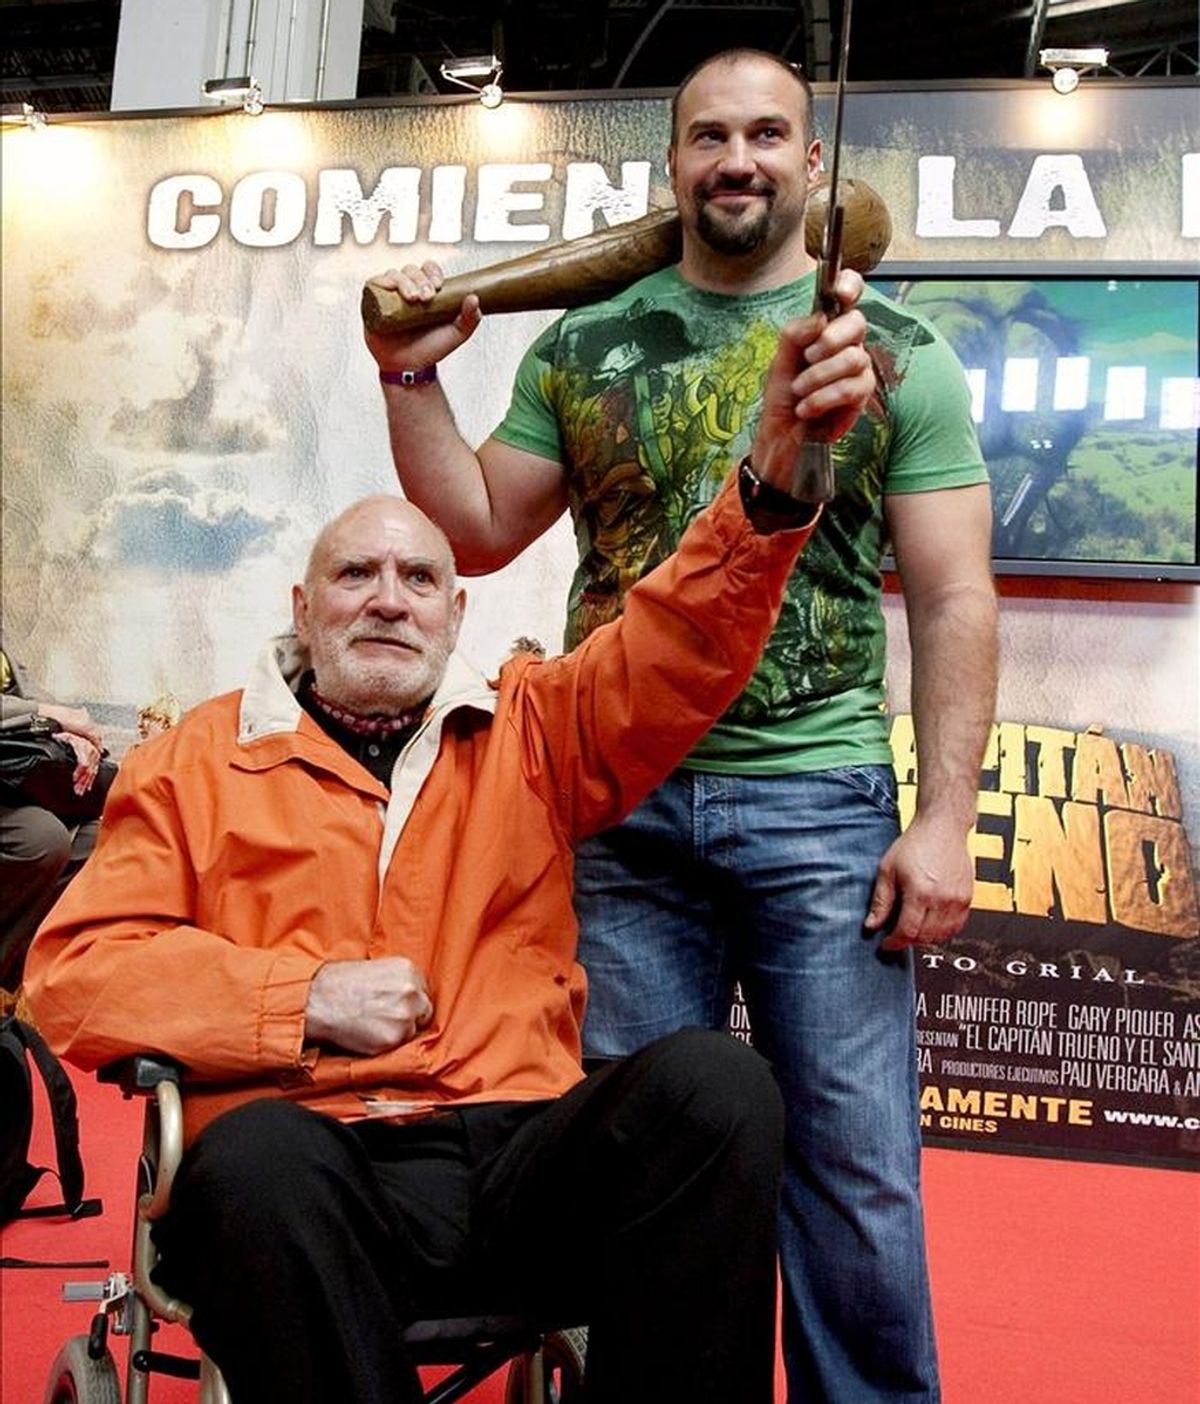 El lanzador de peso Manuel Martínez (d), que interpreta a "Goliath" en la película "El Capitán Trueno y el santo Grial", junto a Víctor Mora (i), creador del cómic en el que está basada la película, posaron hoy en el Salón del Comic de Barcelona. EFE